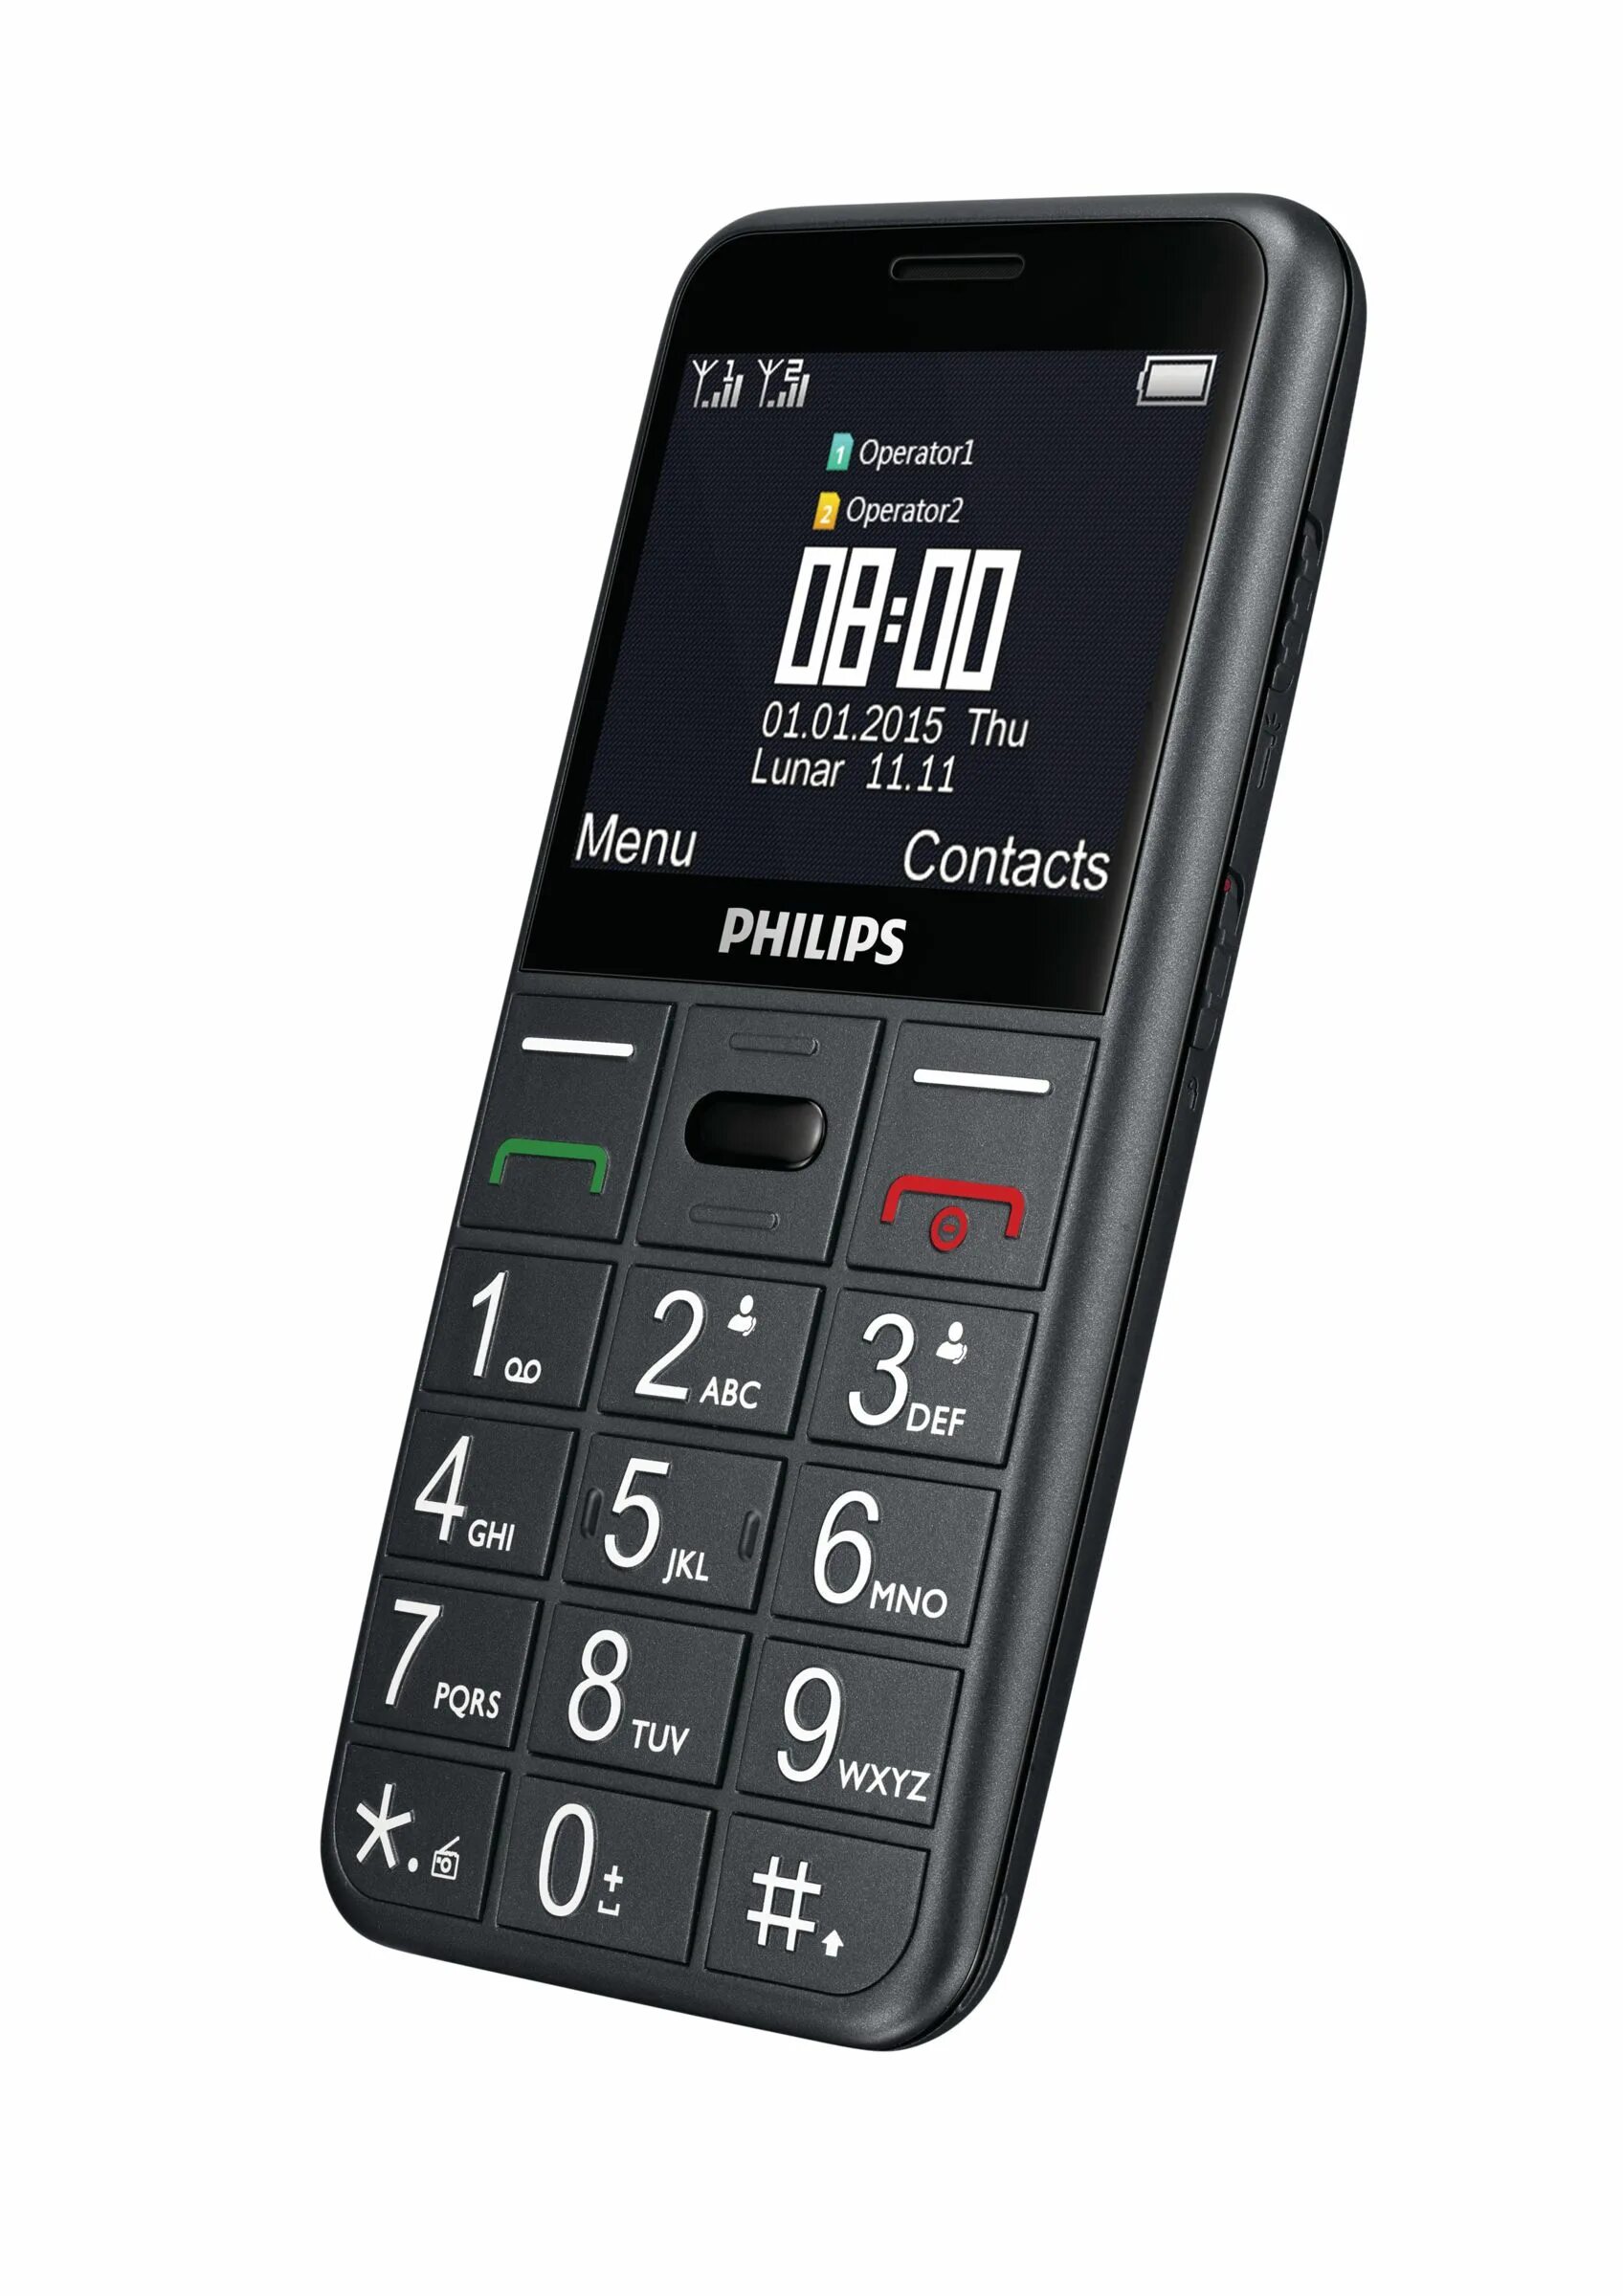 Филипс телефон кнопка. Philips Xenium e311. Philips Xenium бабушкофон. Philips Xenium с большими кнопками и экраном. Кнопочный телефон Филипс с большими кнопками.